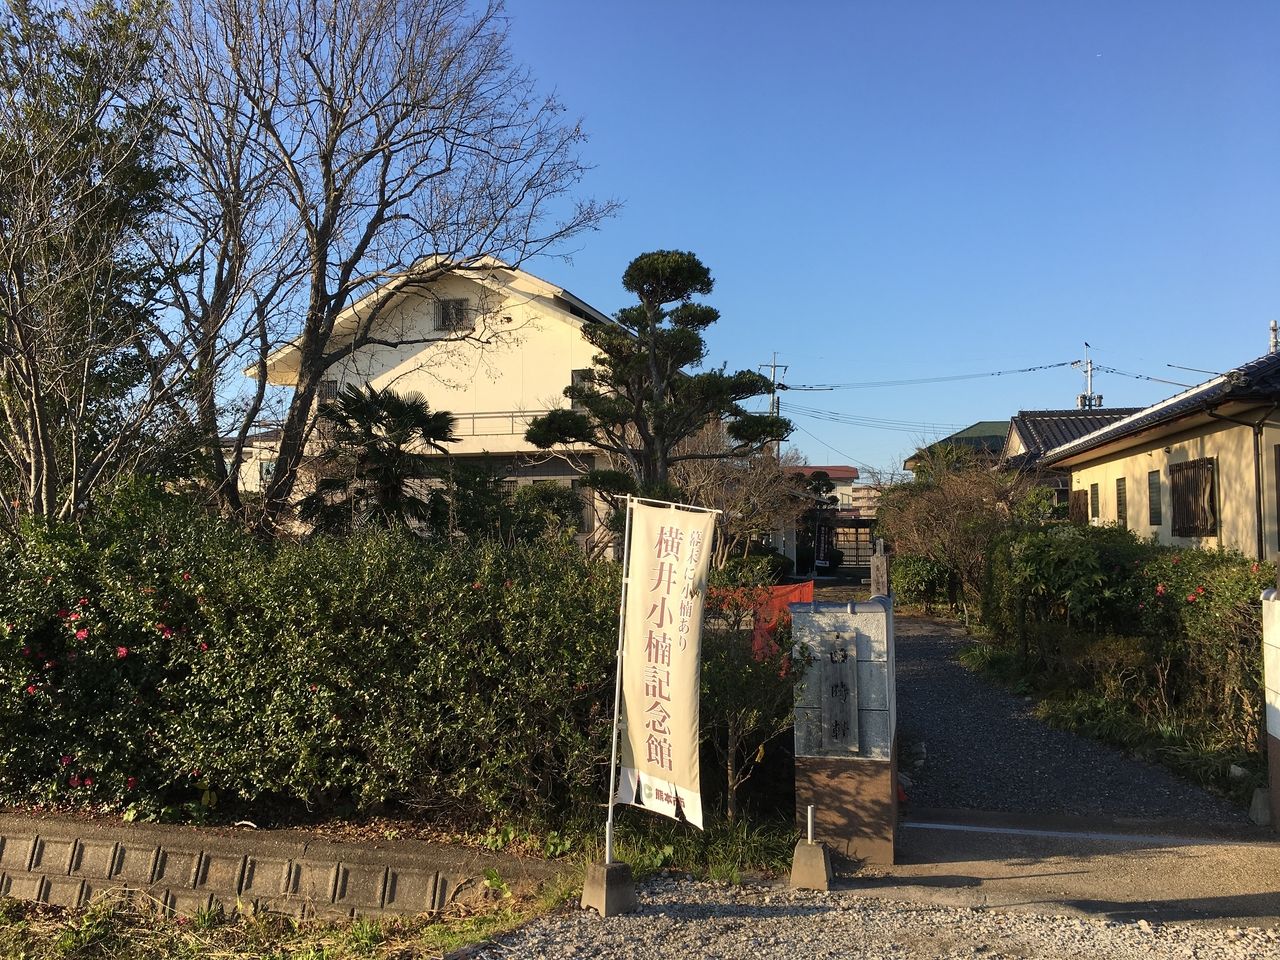 明治維新の功労者・横井小楠の記念館。当時の面影を残していた四時軒は熊本地震で全壊し、その跡地が往時をしのばせるだけだが、その隣地に立つ記念館には貴重な資料が展示されている。秋津川をはさんで南…